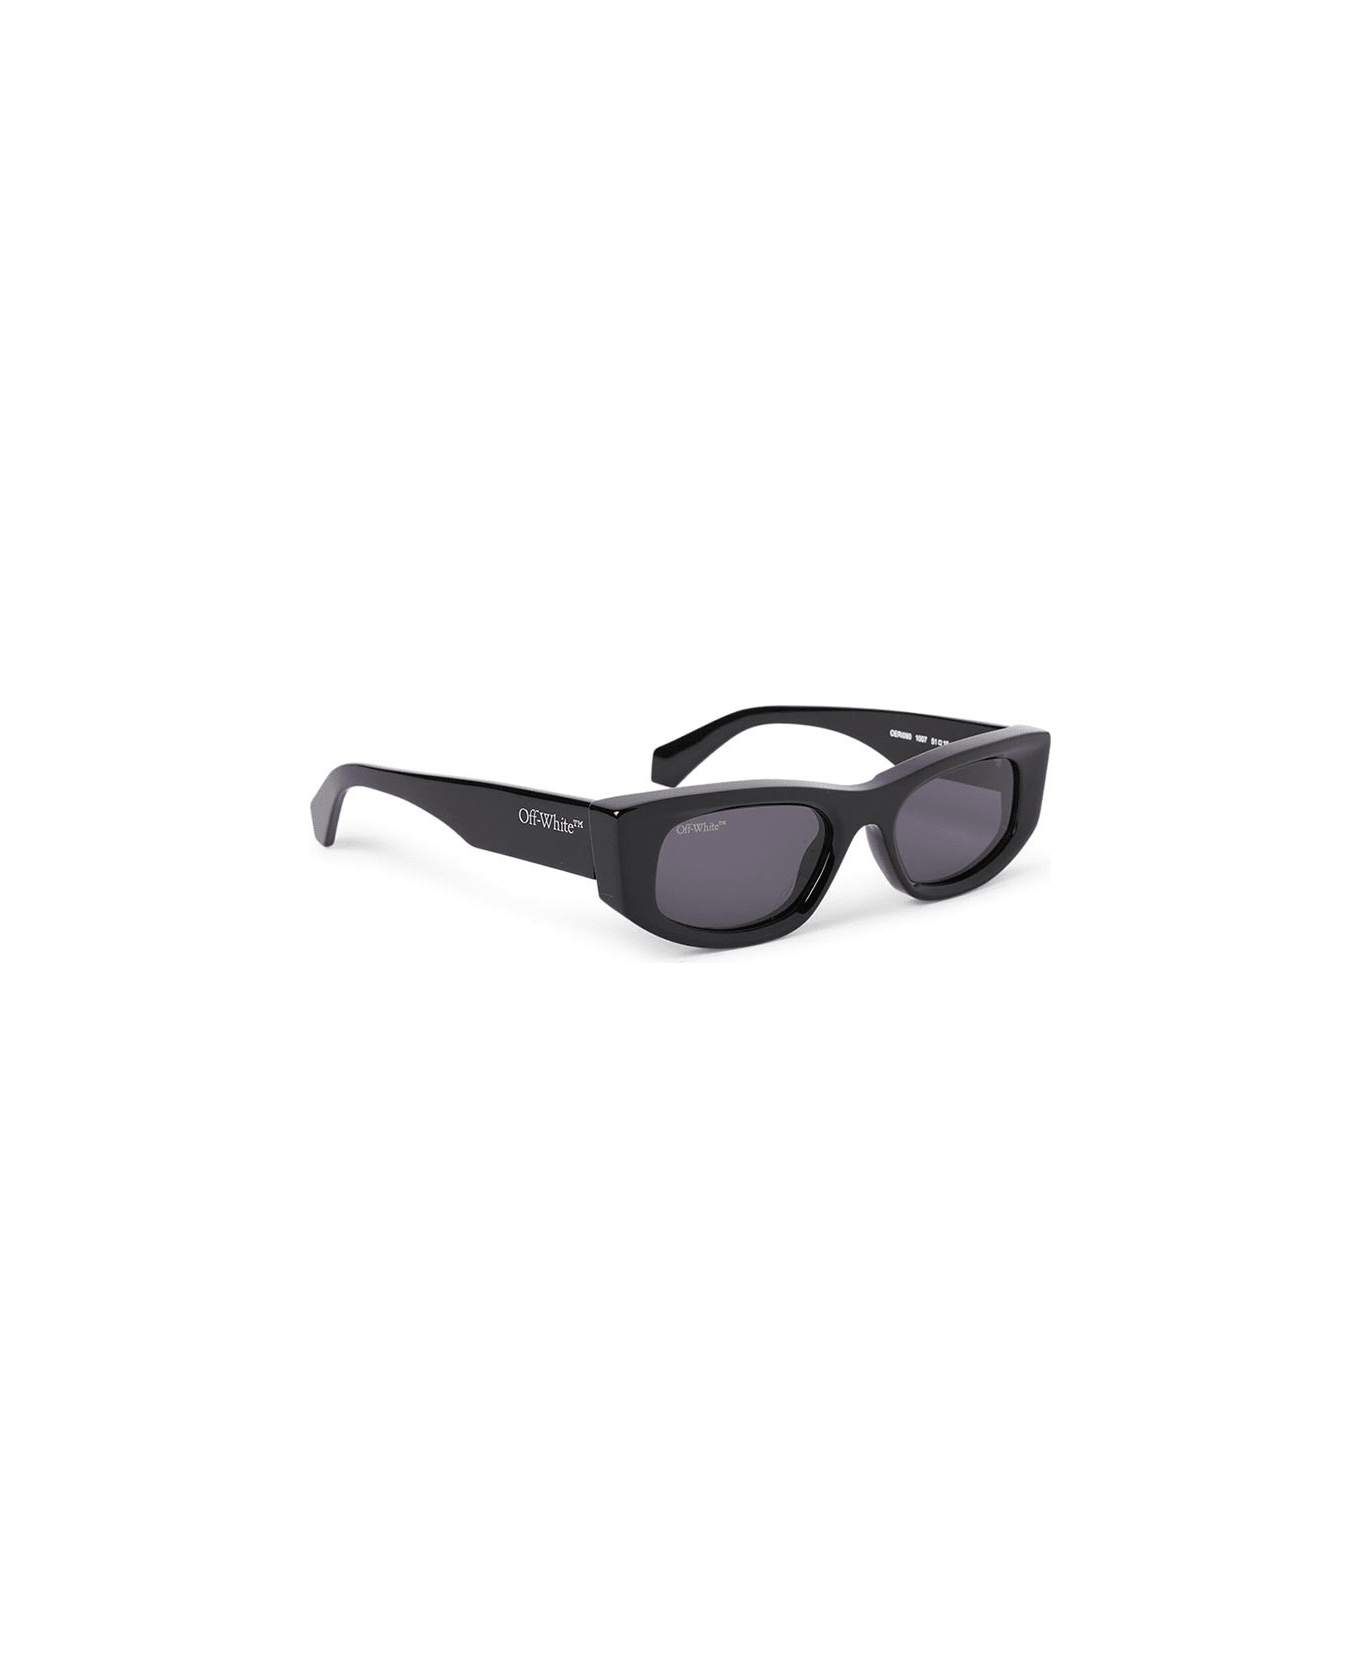 Off-White Matera Sunglasses - Nero/Grigio